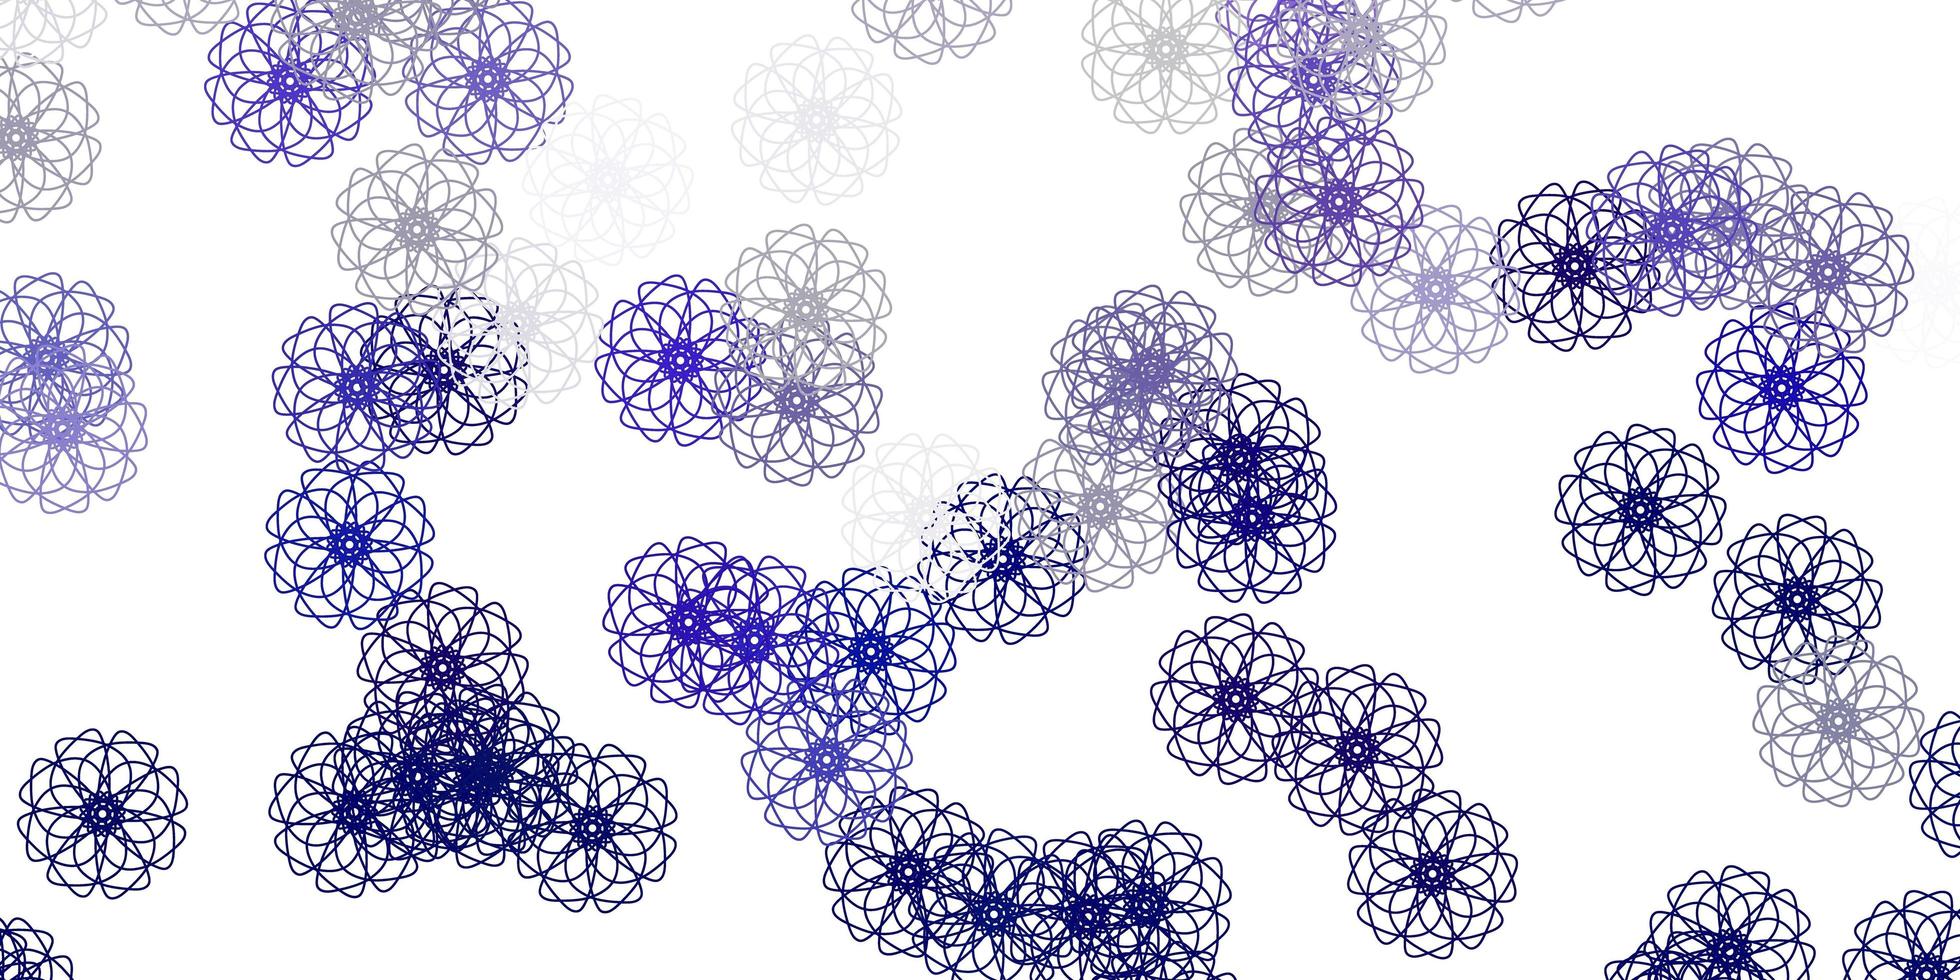 texture de doodle vecteur violet clair avec des fleurs.